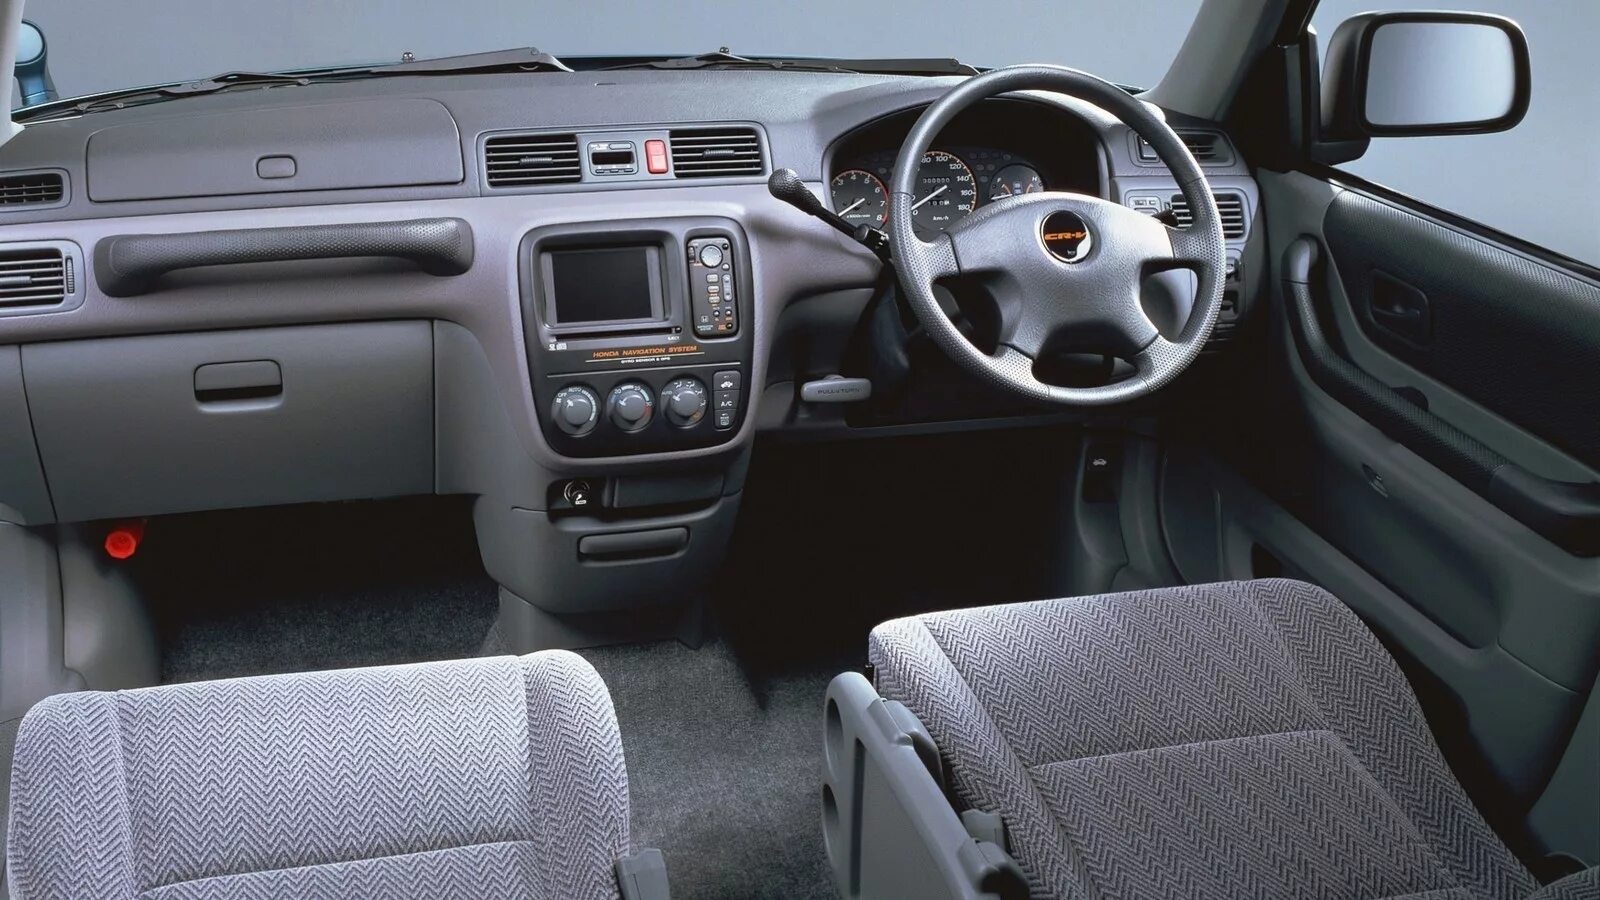 Honda CR V 1997 Interior. Honda CR-V rd1 салон. Хода СРВ 1поколение салон. Honda CR-V 1 поколение салон.